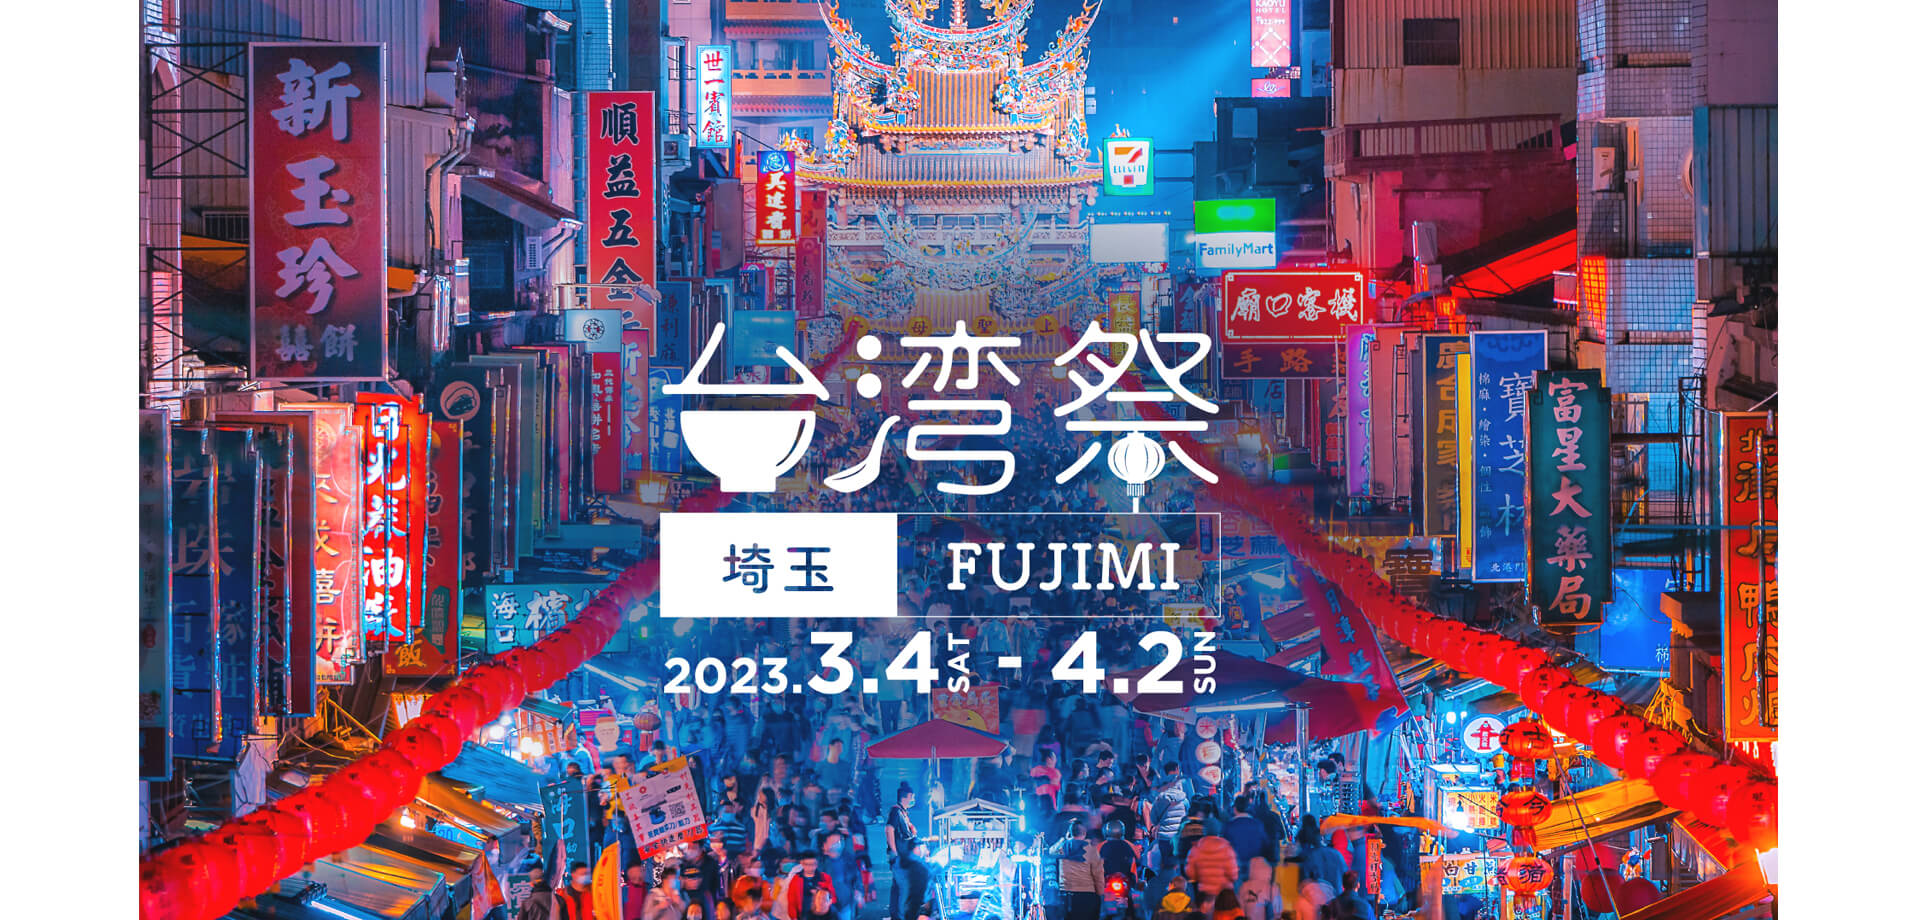 台湾祭 in 埼玉 FUJIMI 2023 ららぽーと富士見 埼玉